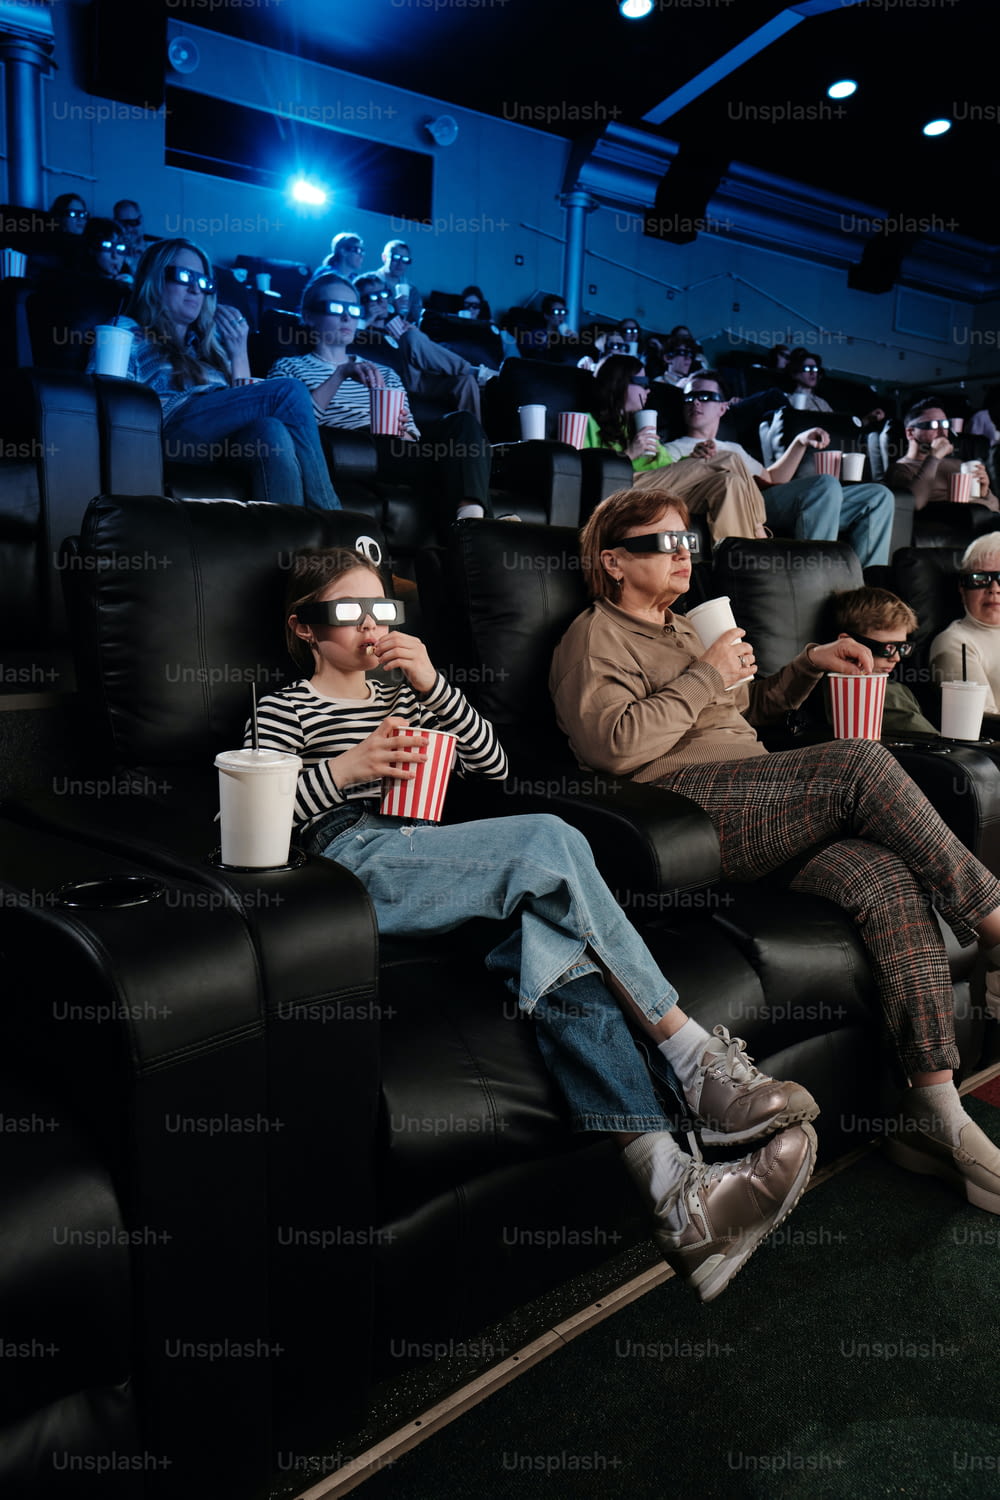 영화관에 앉아 있는 한 무리의 사람들